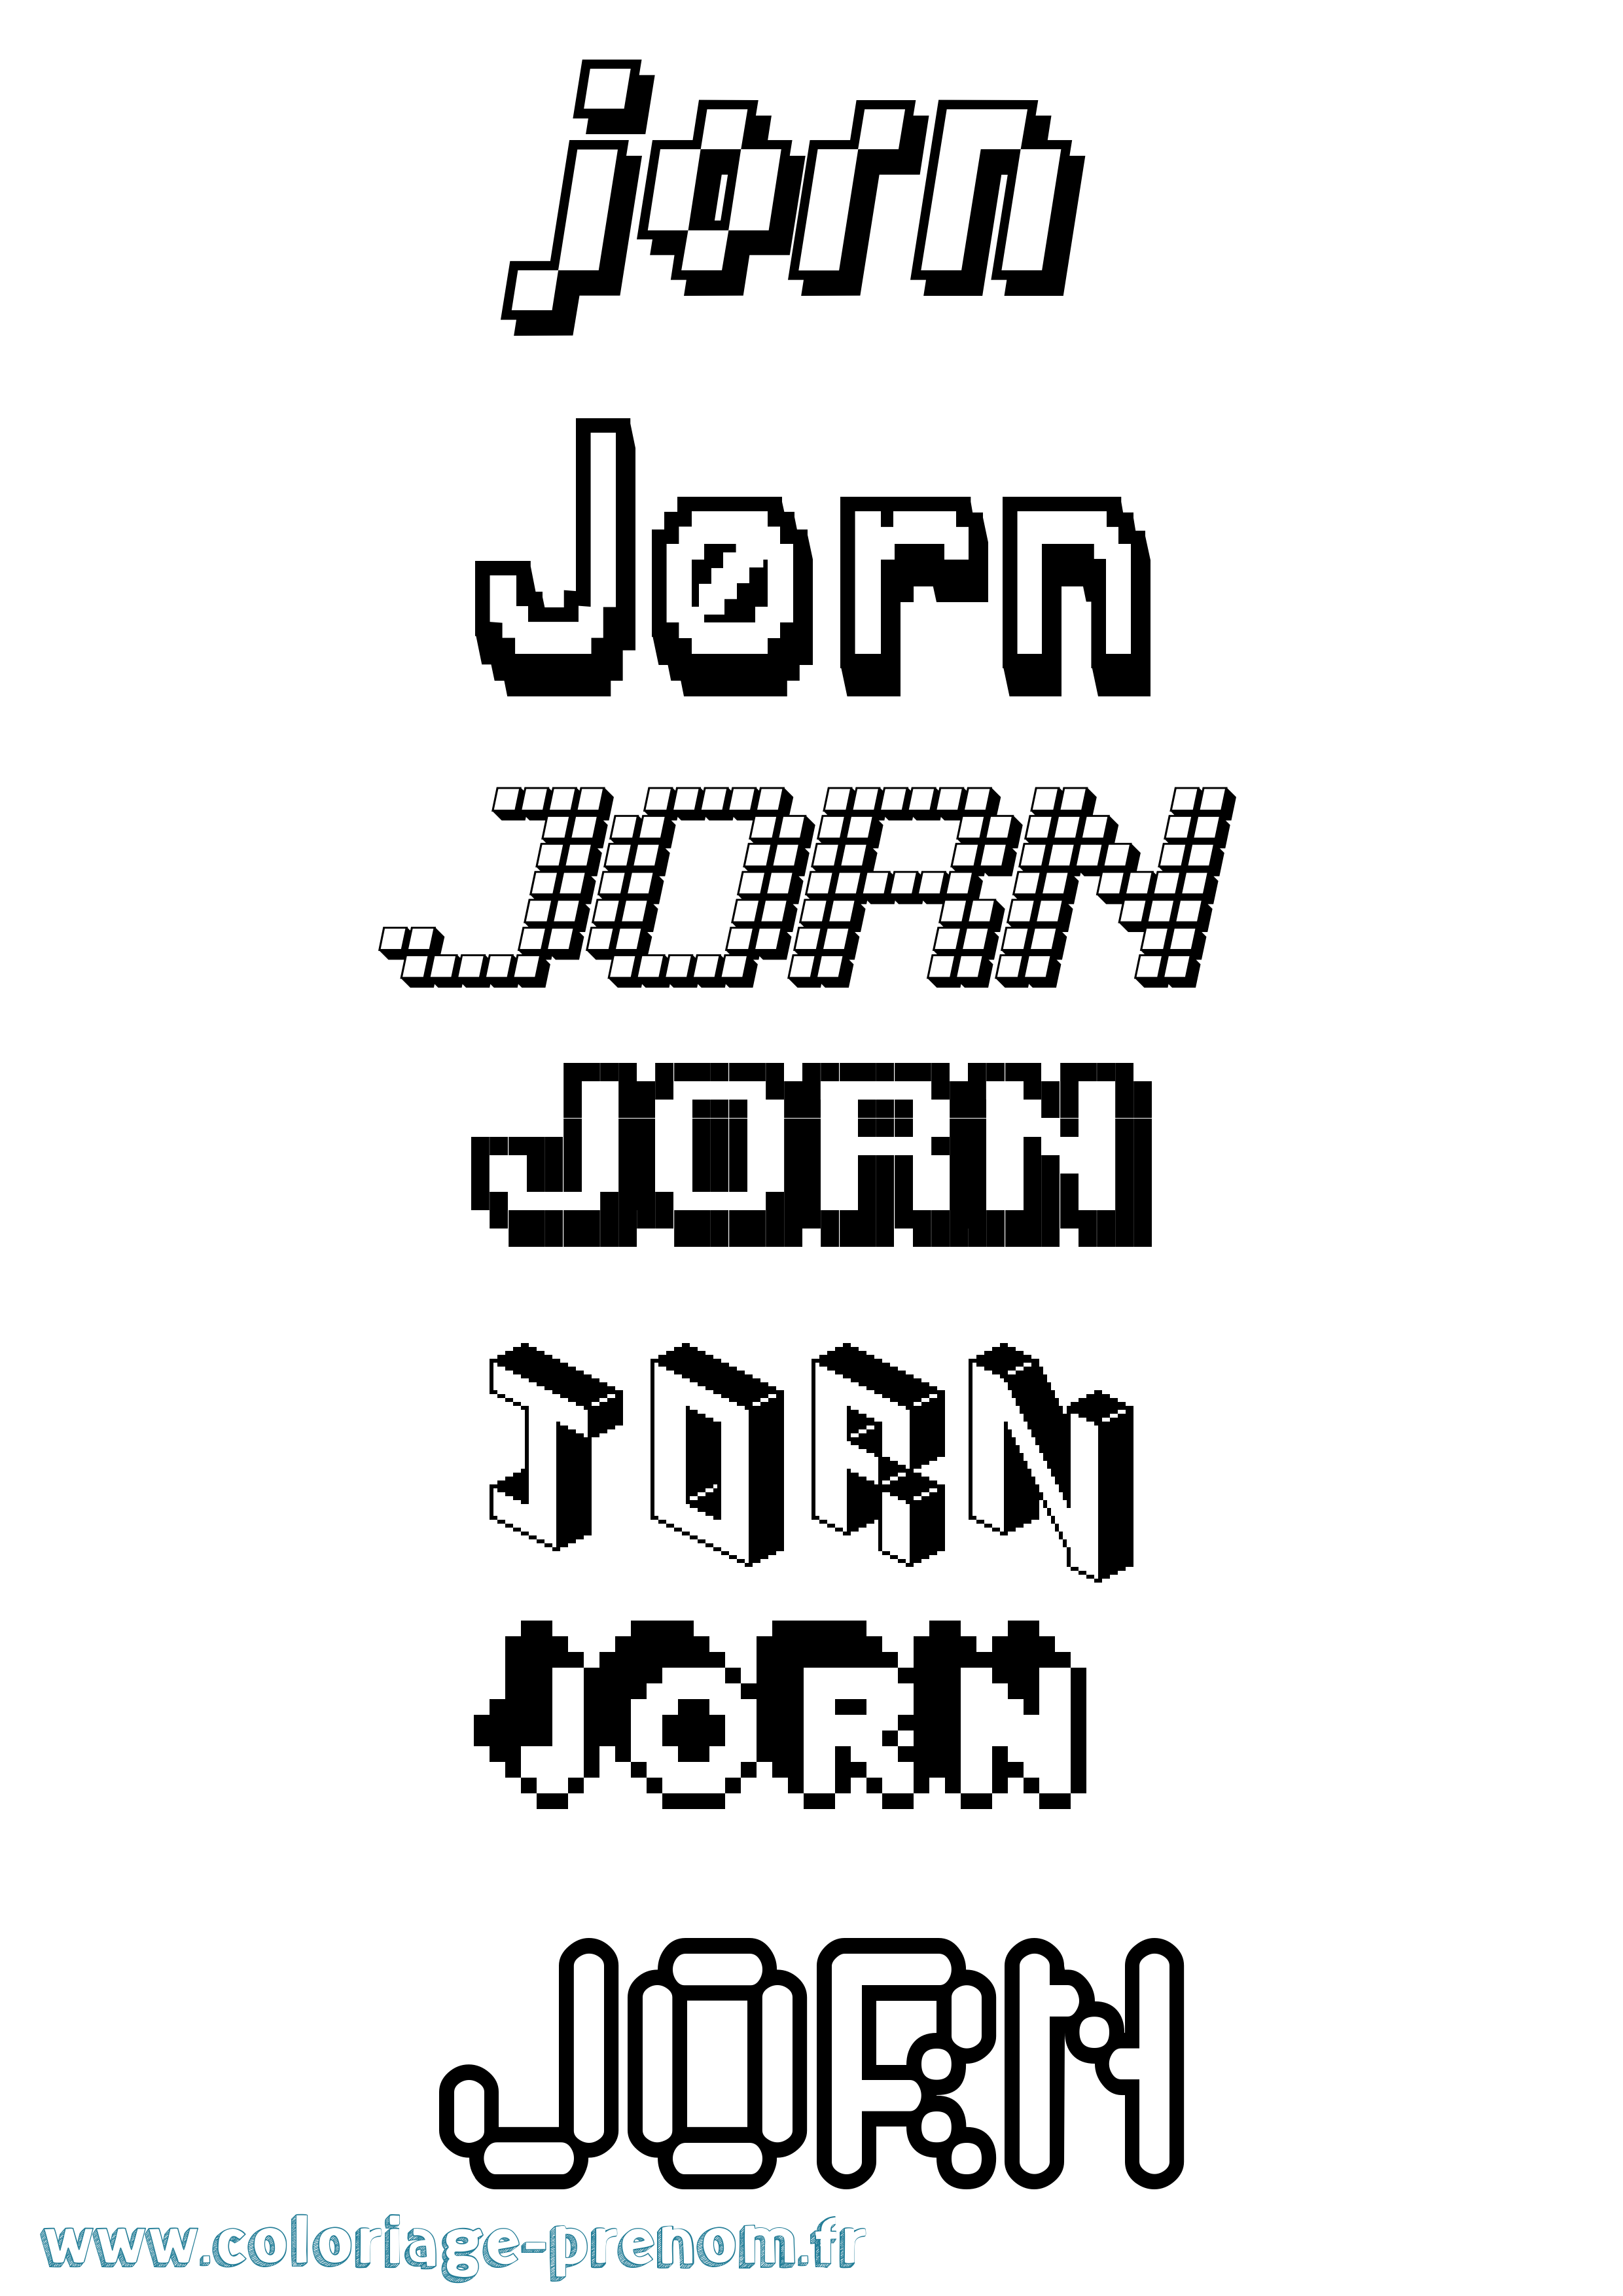 Coloriage prénom Jørn Pixel